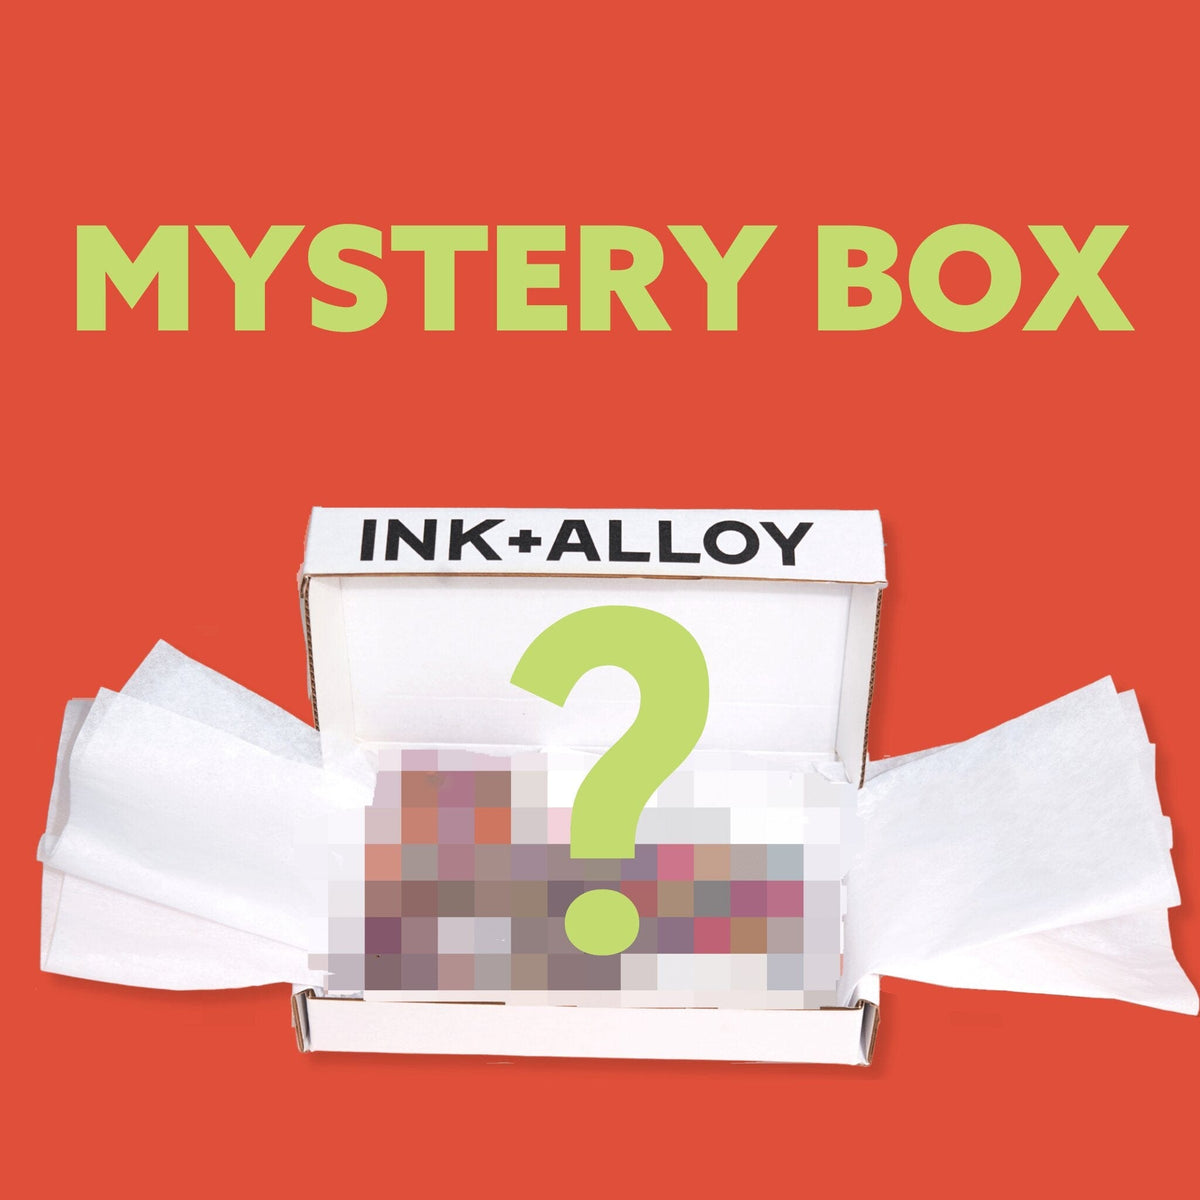 Mystery Box – INK+ALLOY, LLC